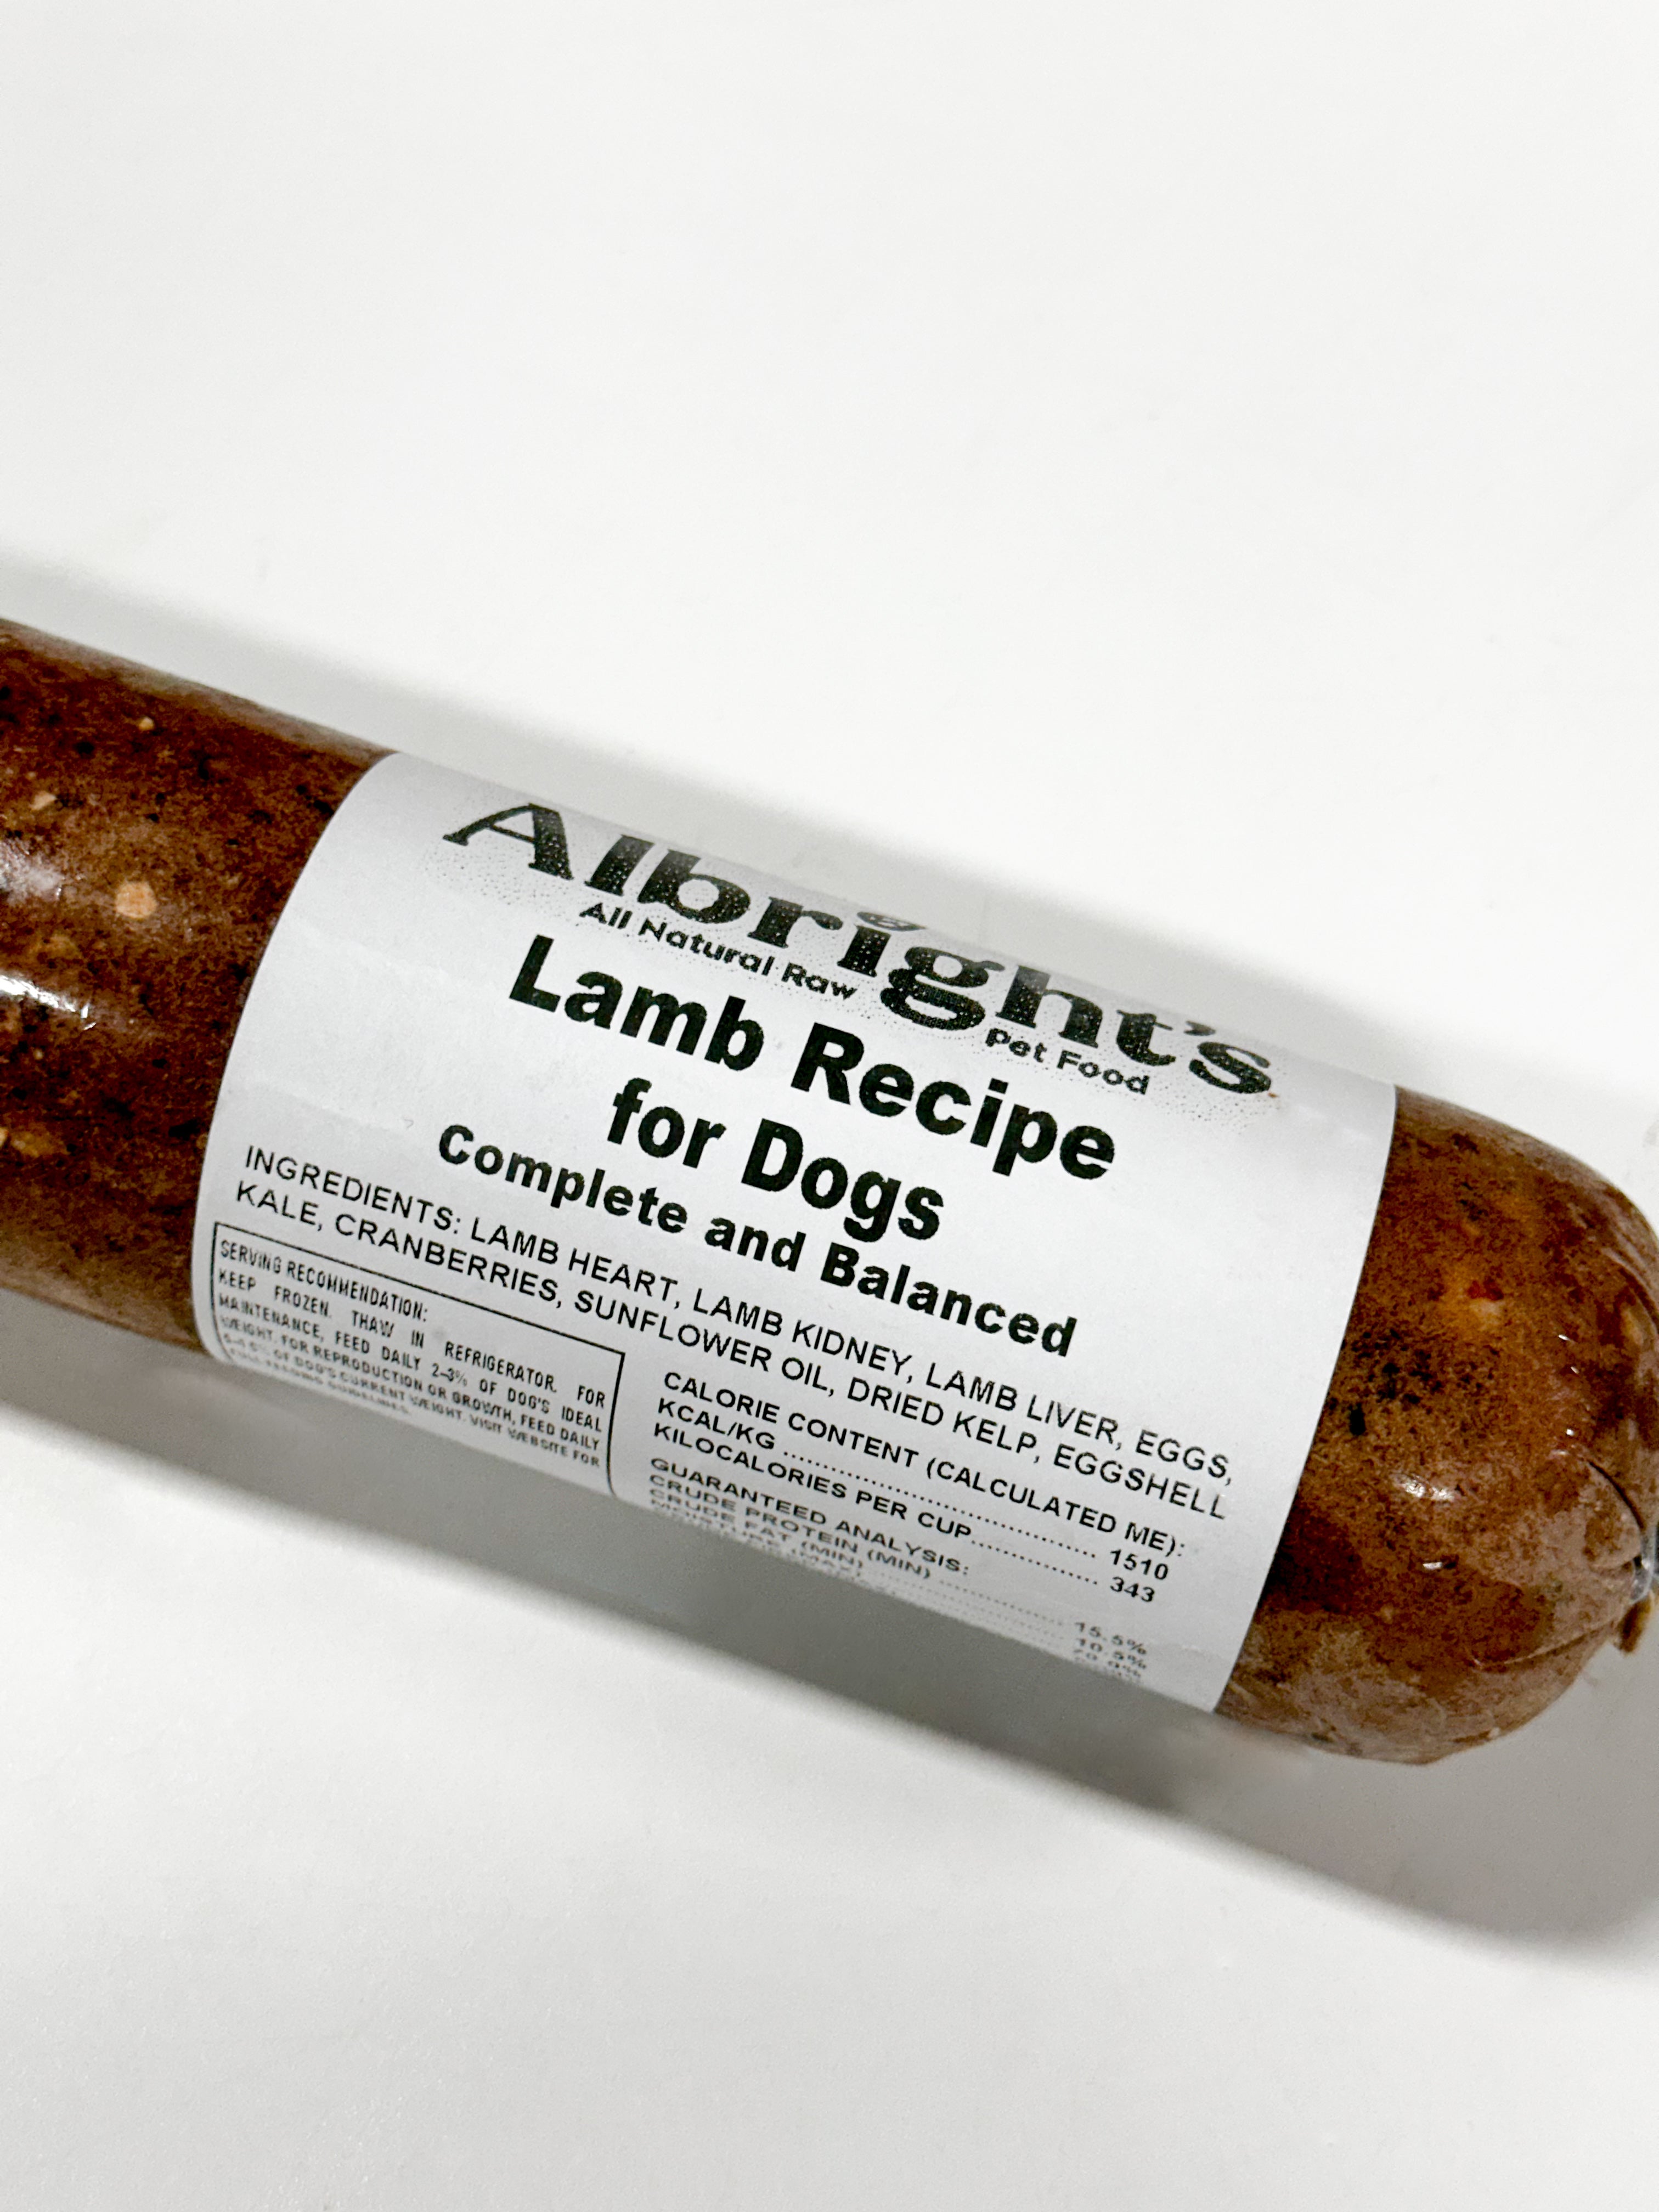 Albright's Lamb - 2 lb/18 Roll Case